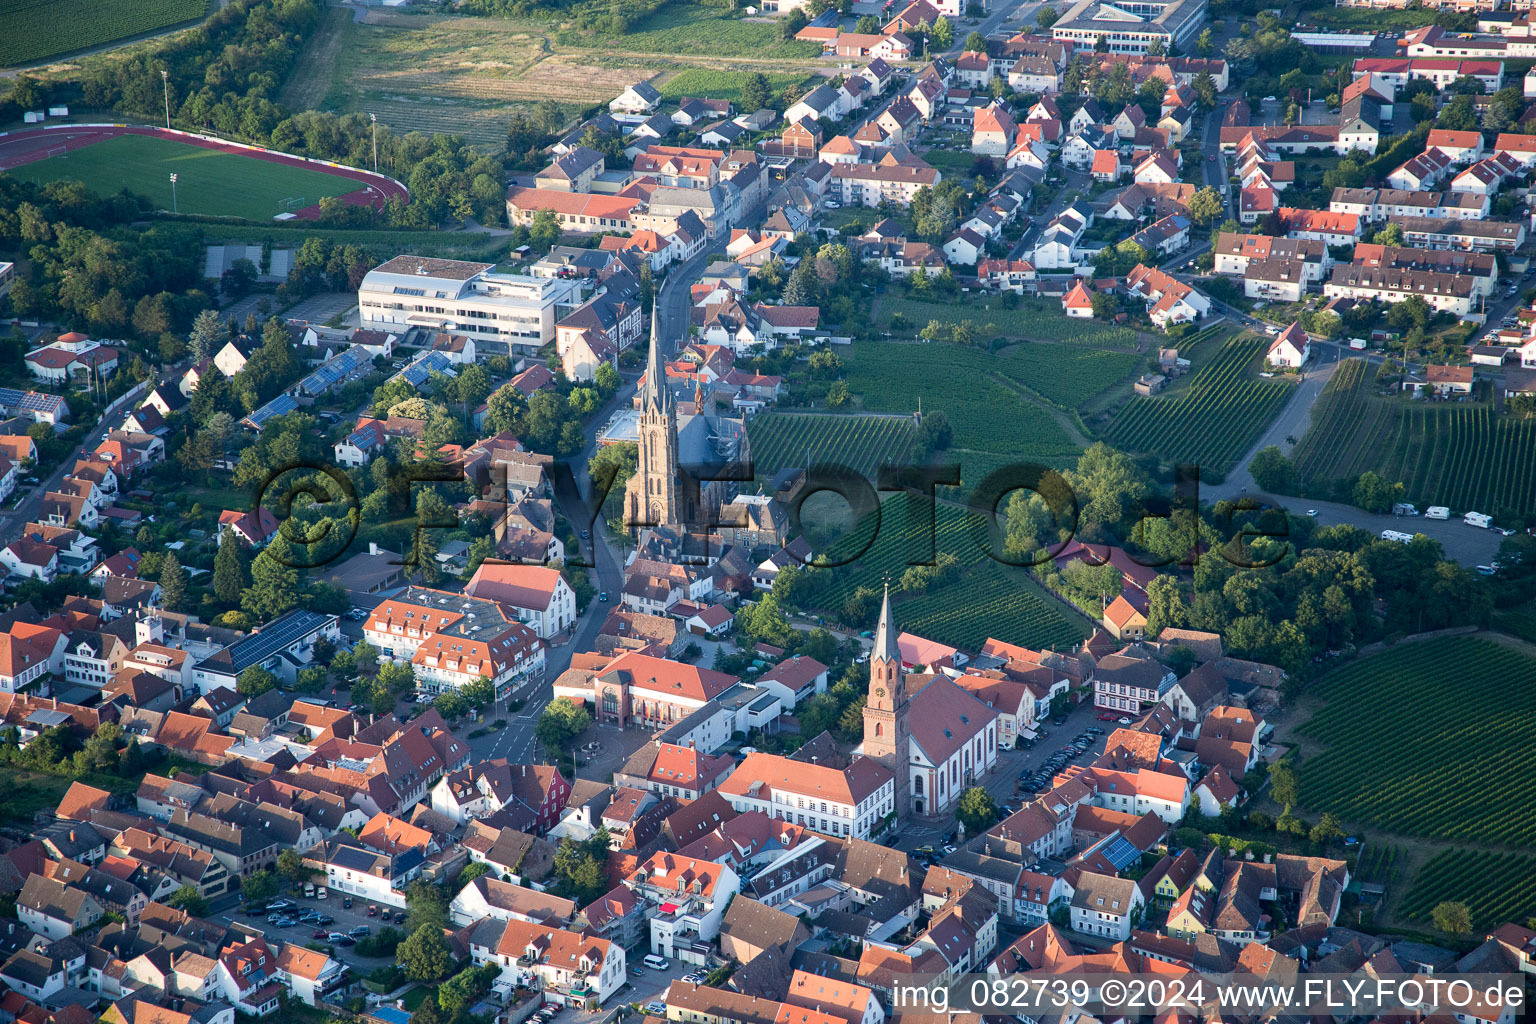 Vue aérienne de Bâtiment de l'église Saint-Louis dans le vieux centre-ville du centre-ville à Edenkoben dans le département Rhénanie-Palatinat, Allemagne